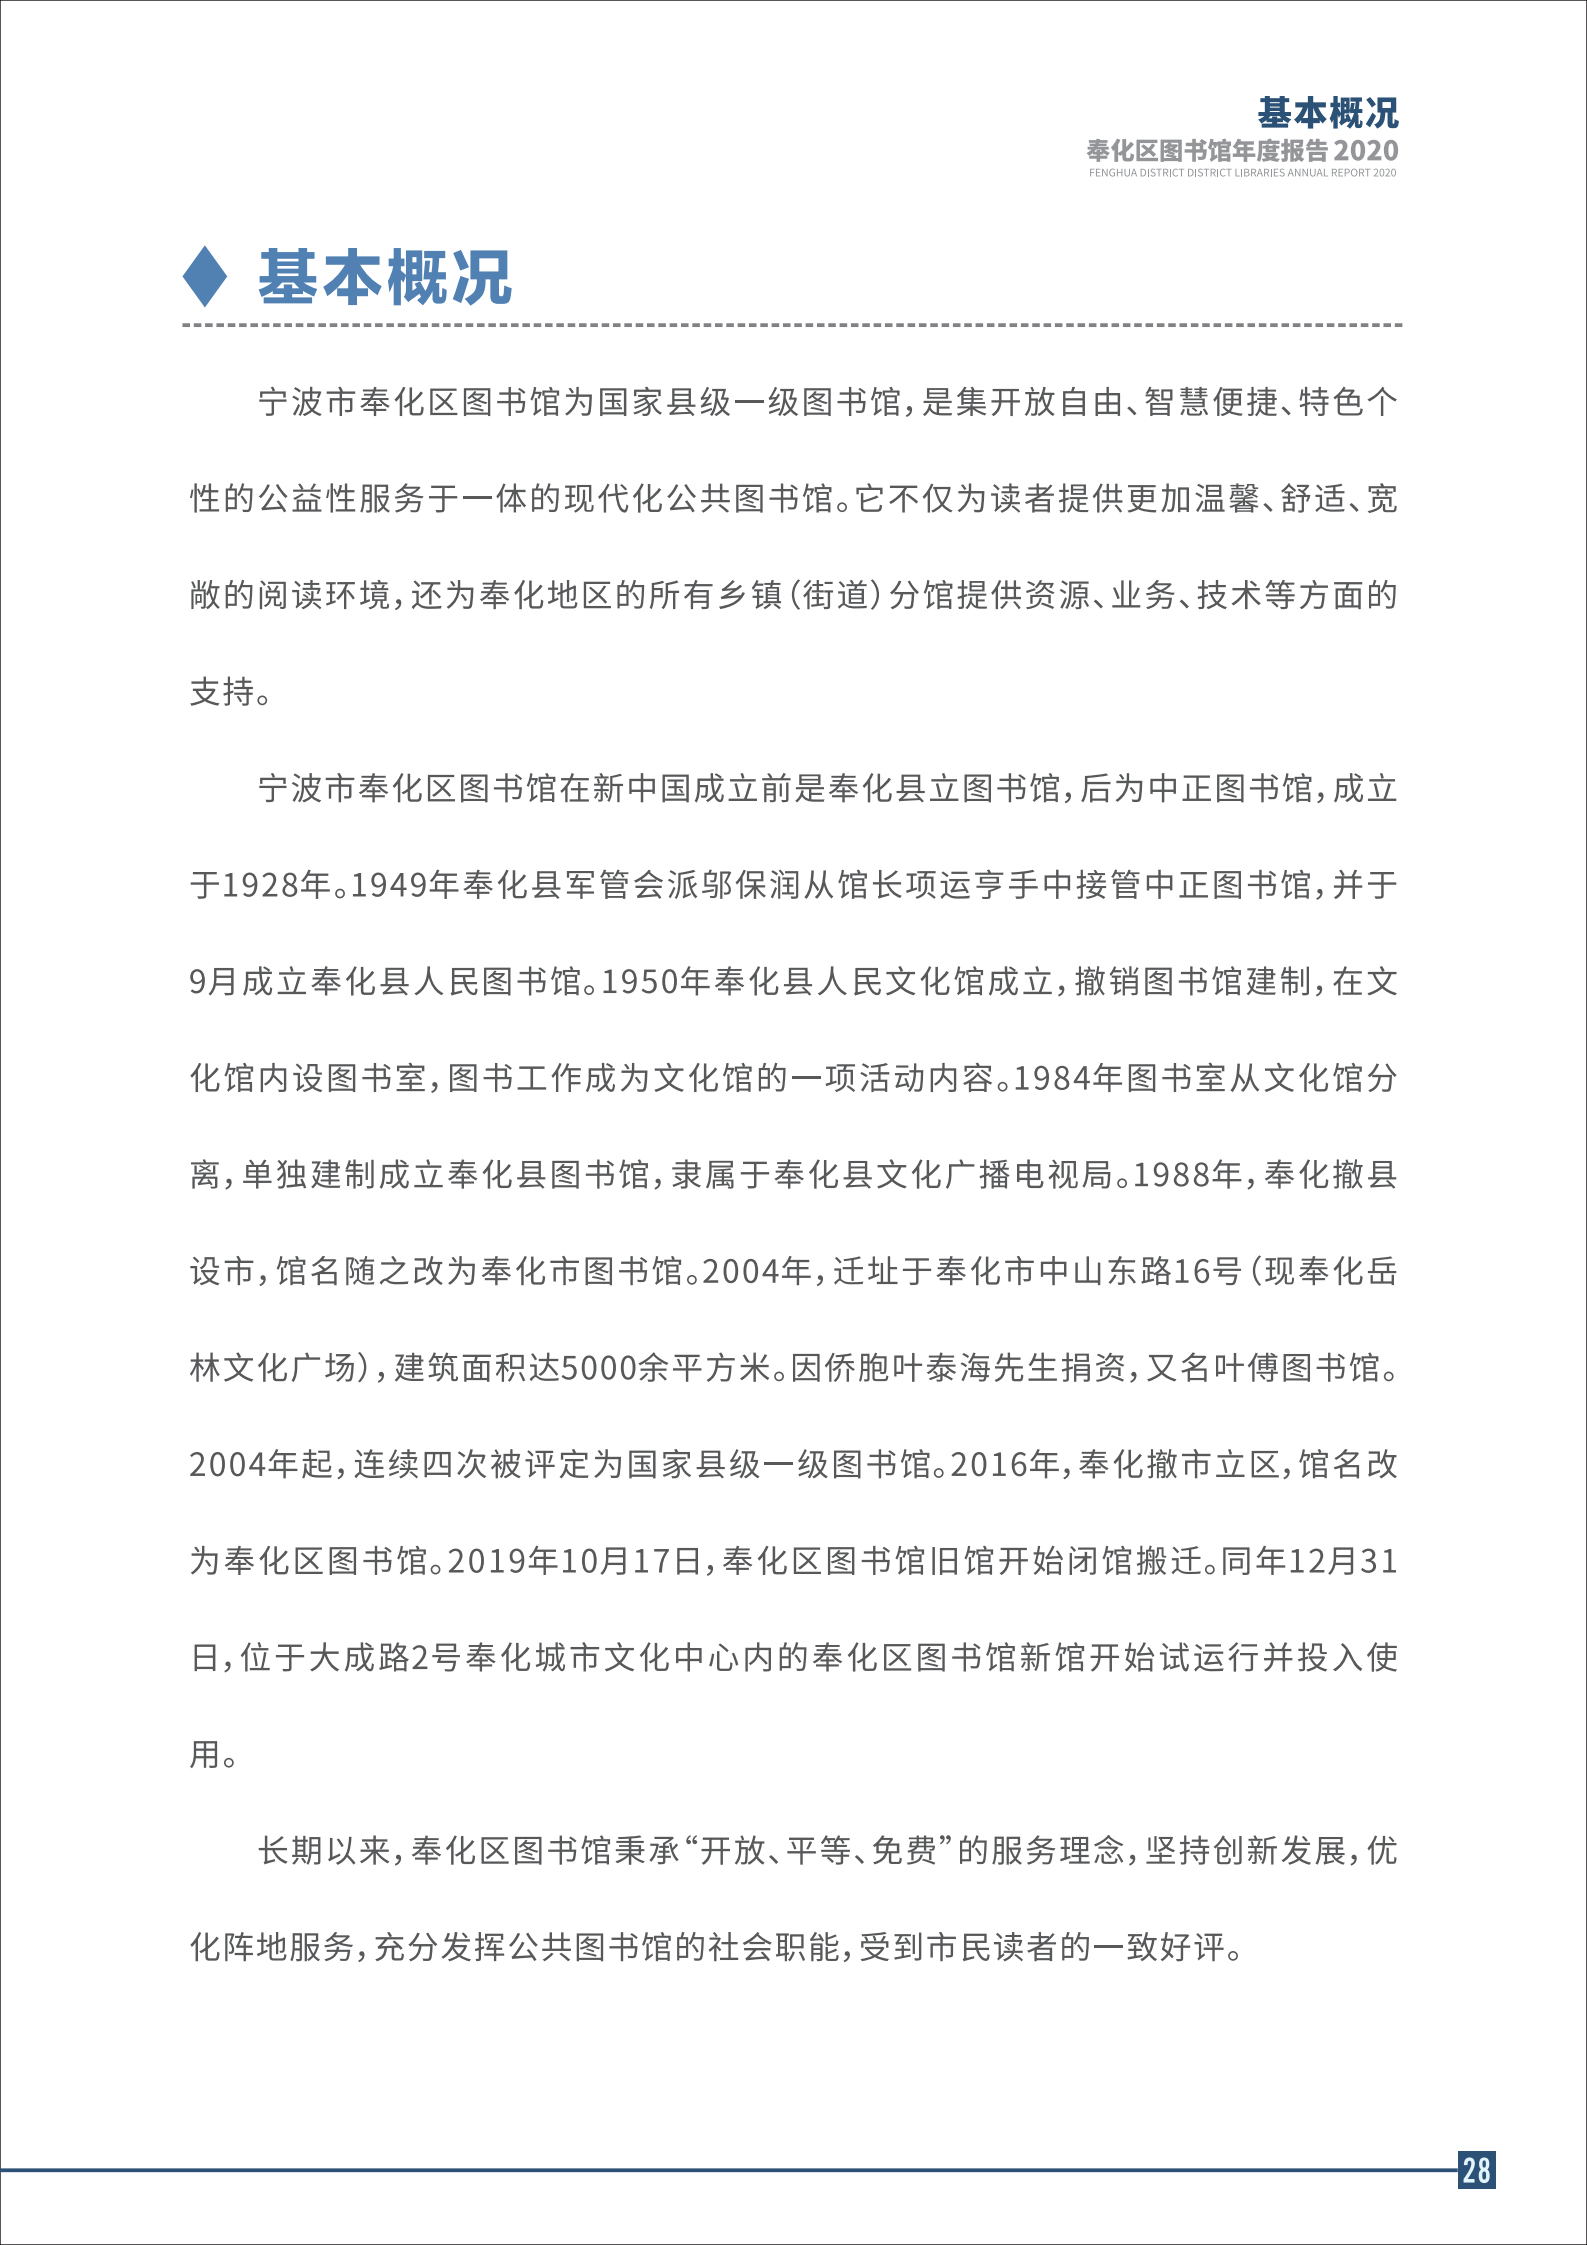 宁波市奉化区图书馆2020年年度报告 终稿_28.png